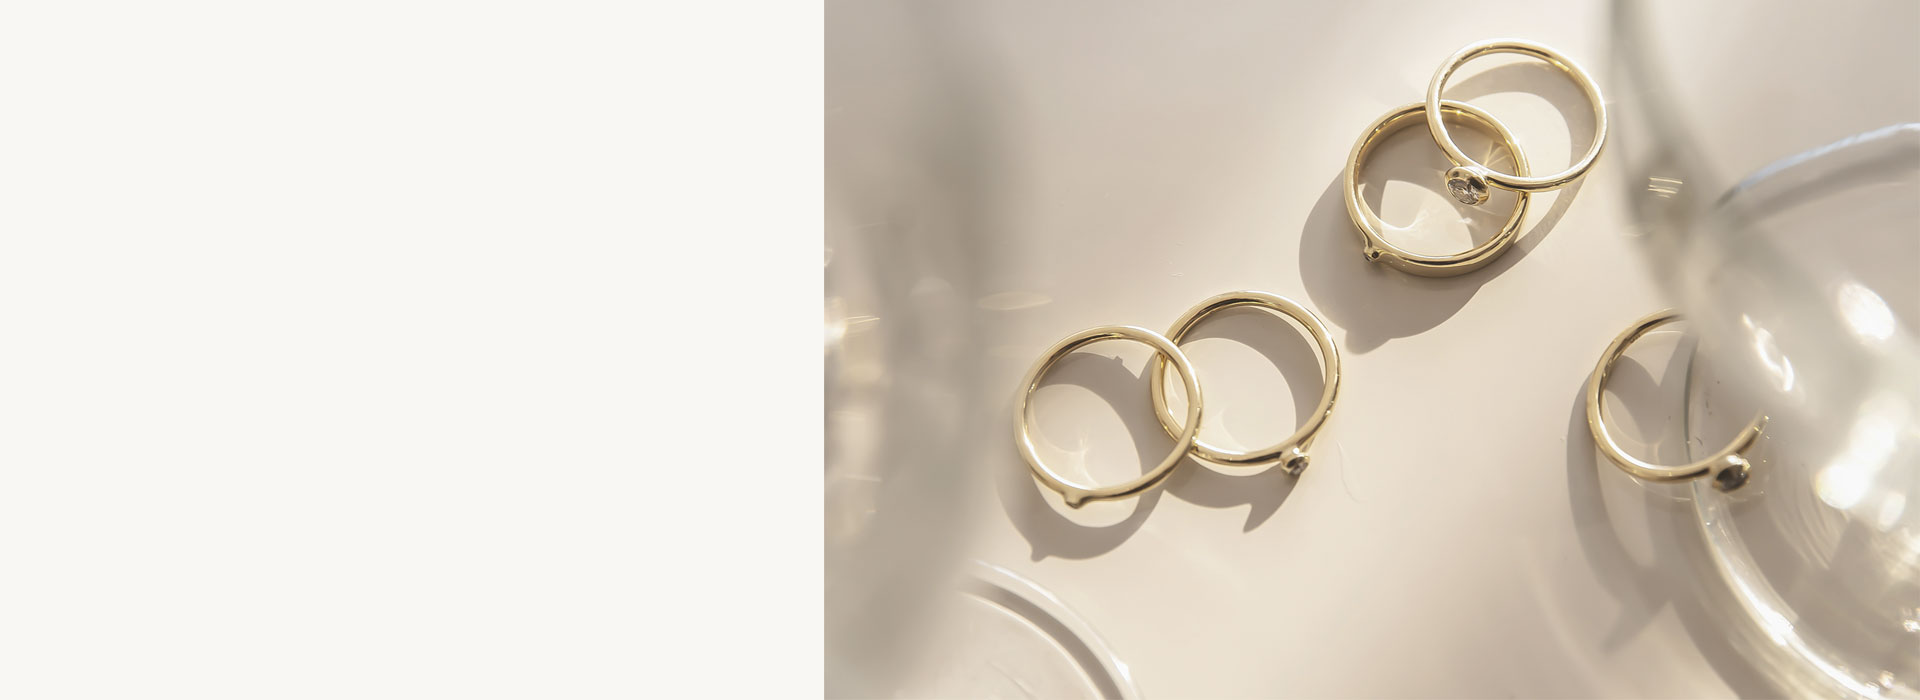 Alianças, Anéis, Solitário da coleção Nordic para noivados, casamentos e como acessórios. Feitos em ouro 18 quilates, diamantes de diversos tamanhos e com pedra de 0,22ct.